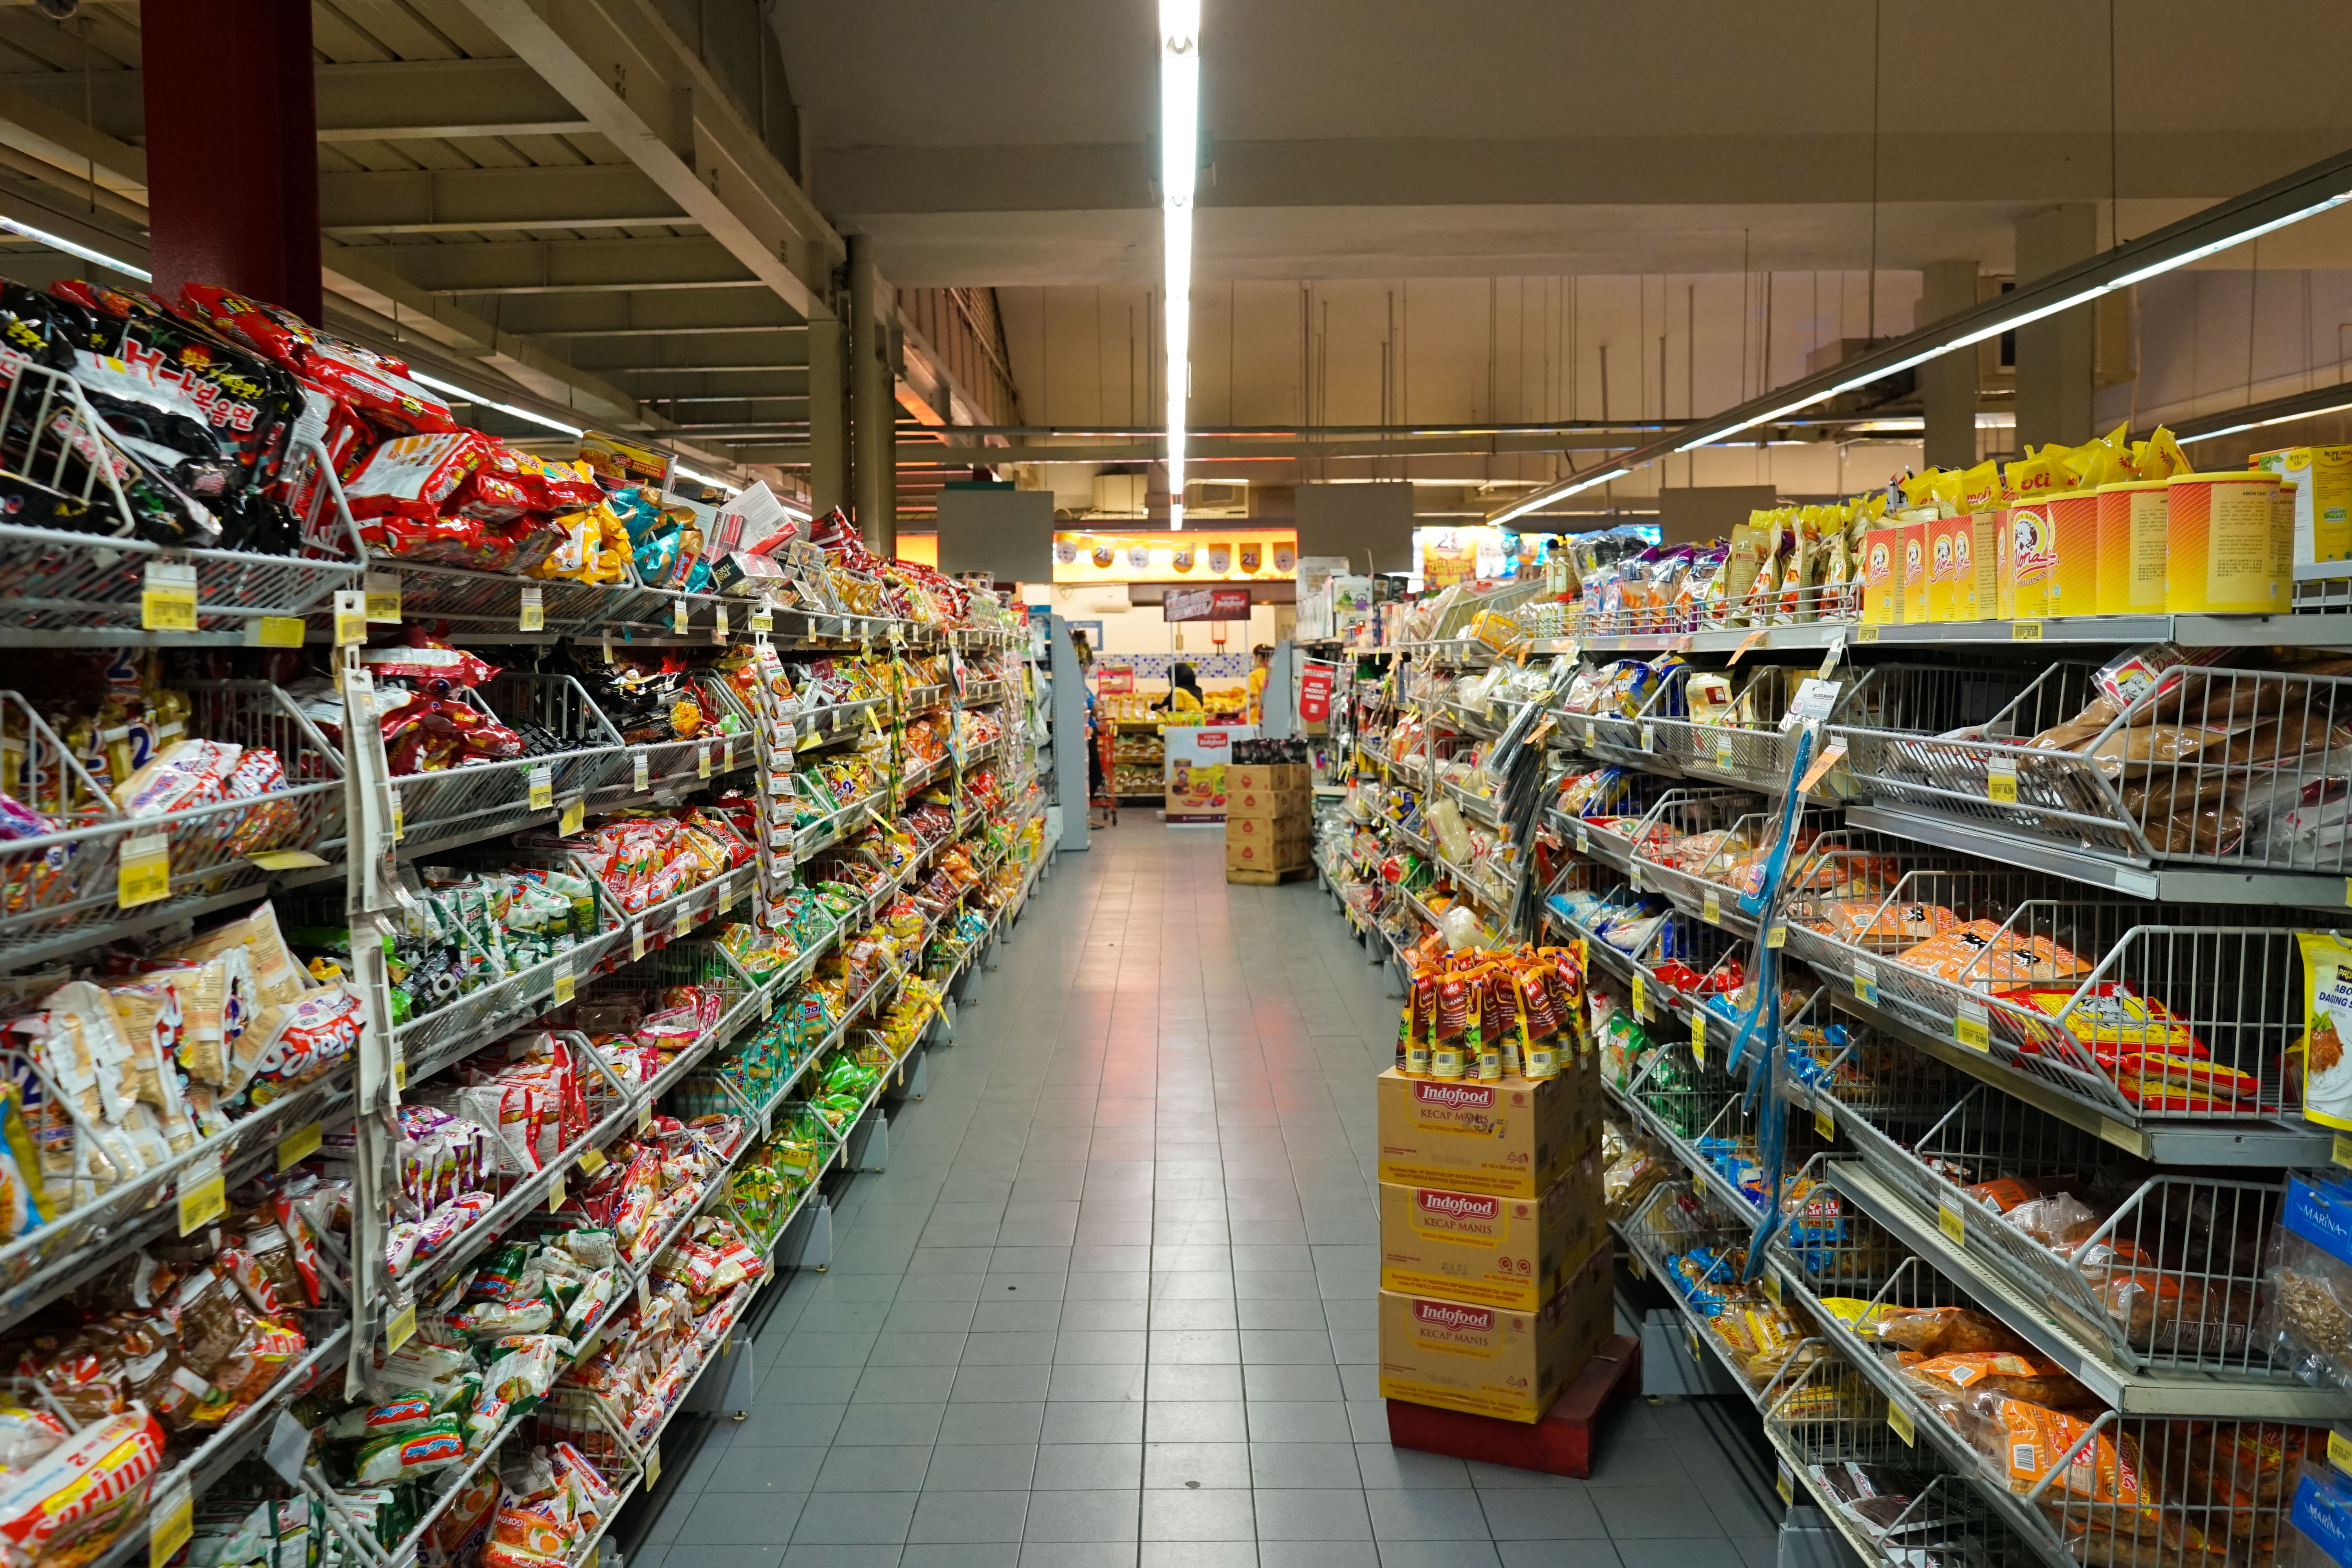 An aisle down a supermarket.